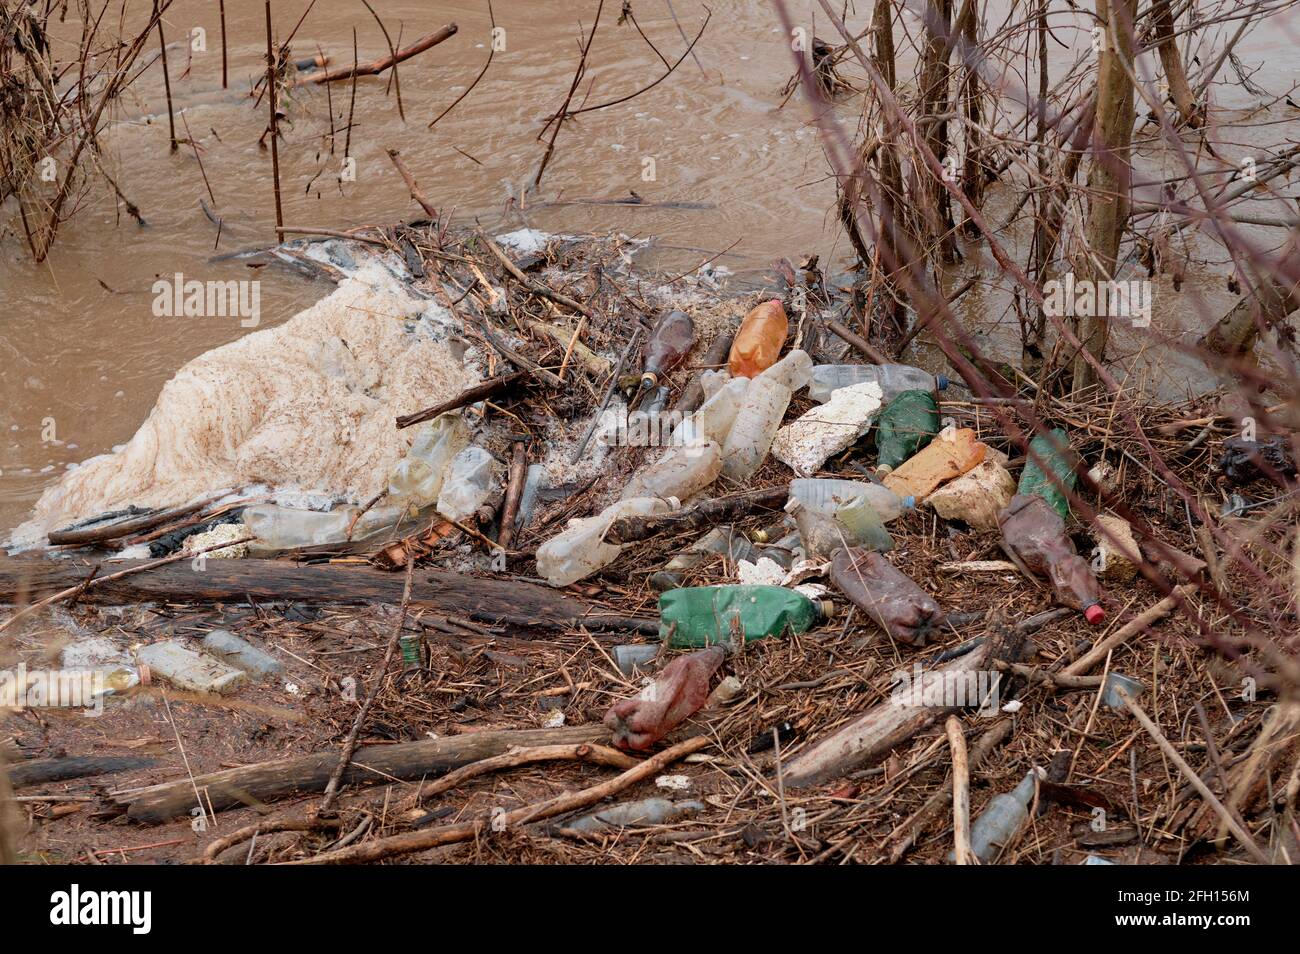 rivière avec bouteilles en plastique laissées par les gens. Catastrophe environnementale des ressources en eau. Bouteilles en plastique et déchets dans l'eau de la rivière. Pollution de l'environnement Banque D'Images